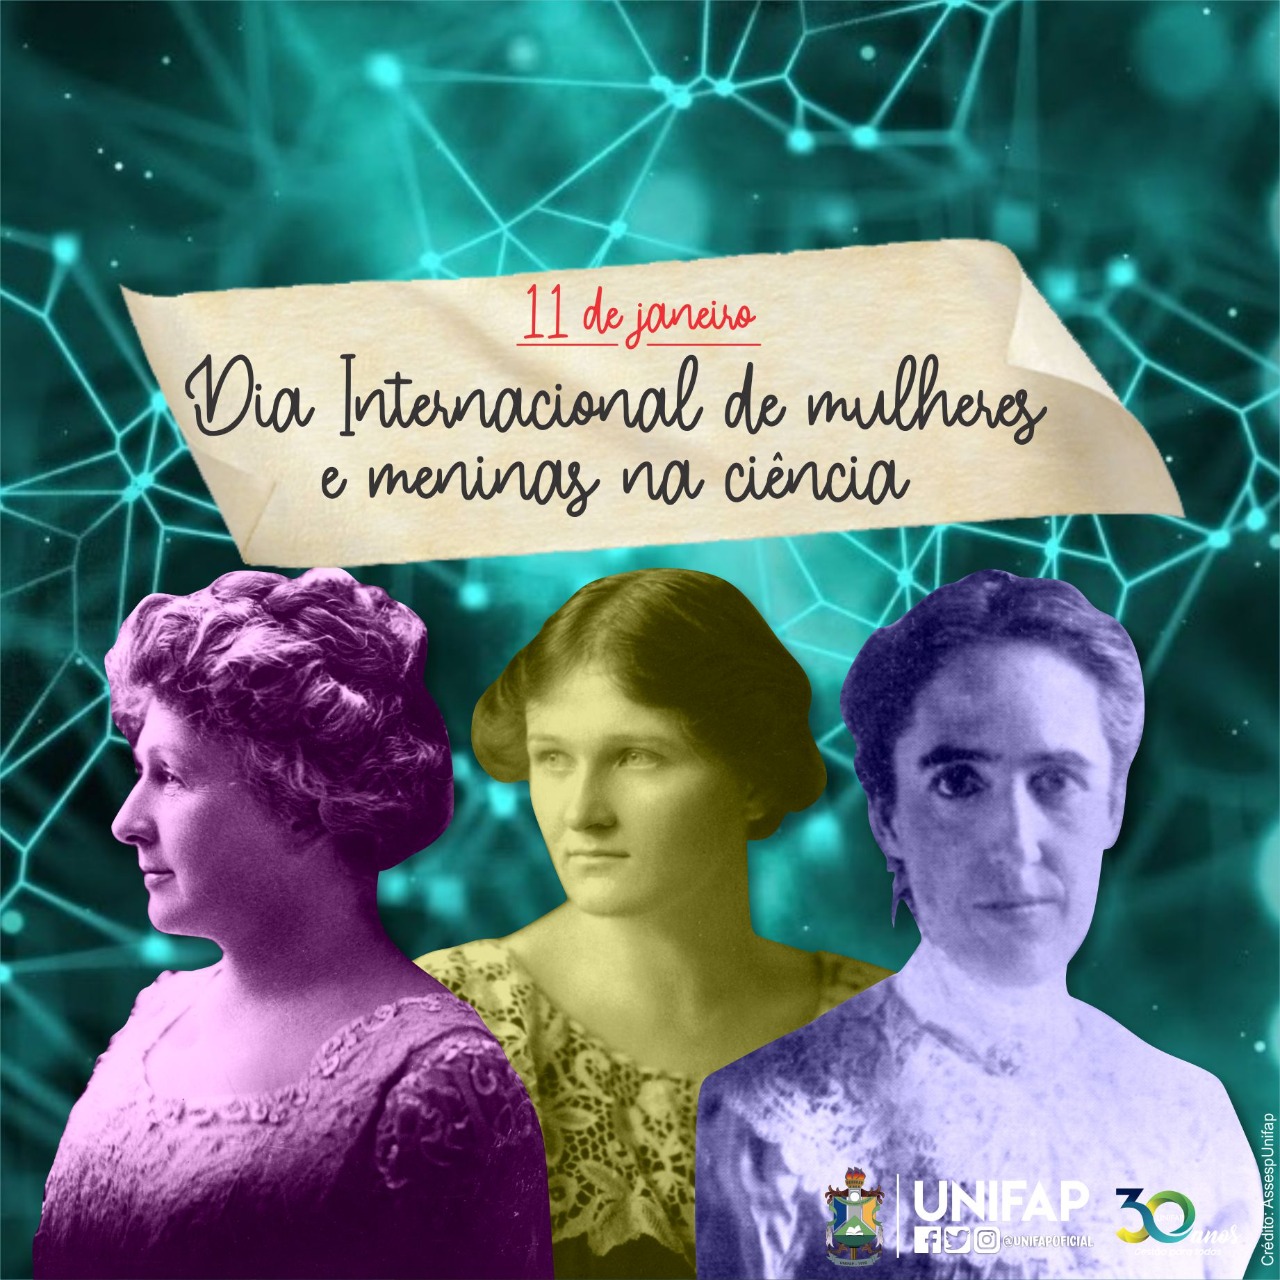 Unifap parabeniza comunidade feminina pelo Dia Internacional das Mulheres e Meninas na Ciência